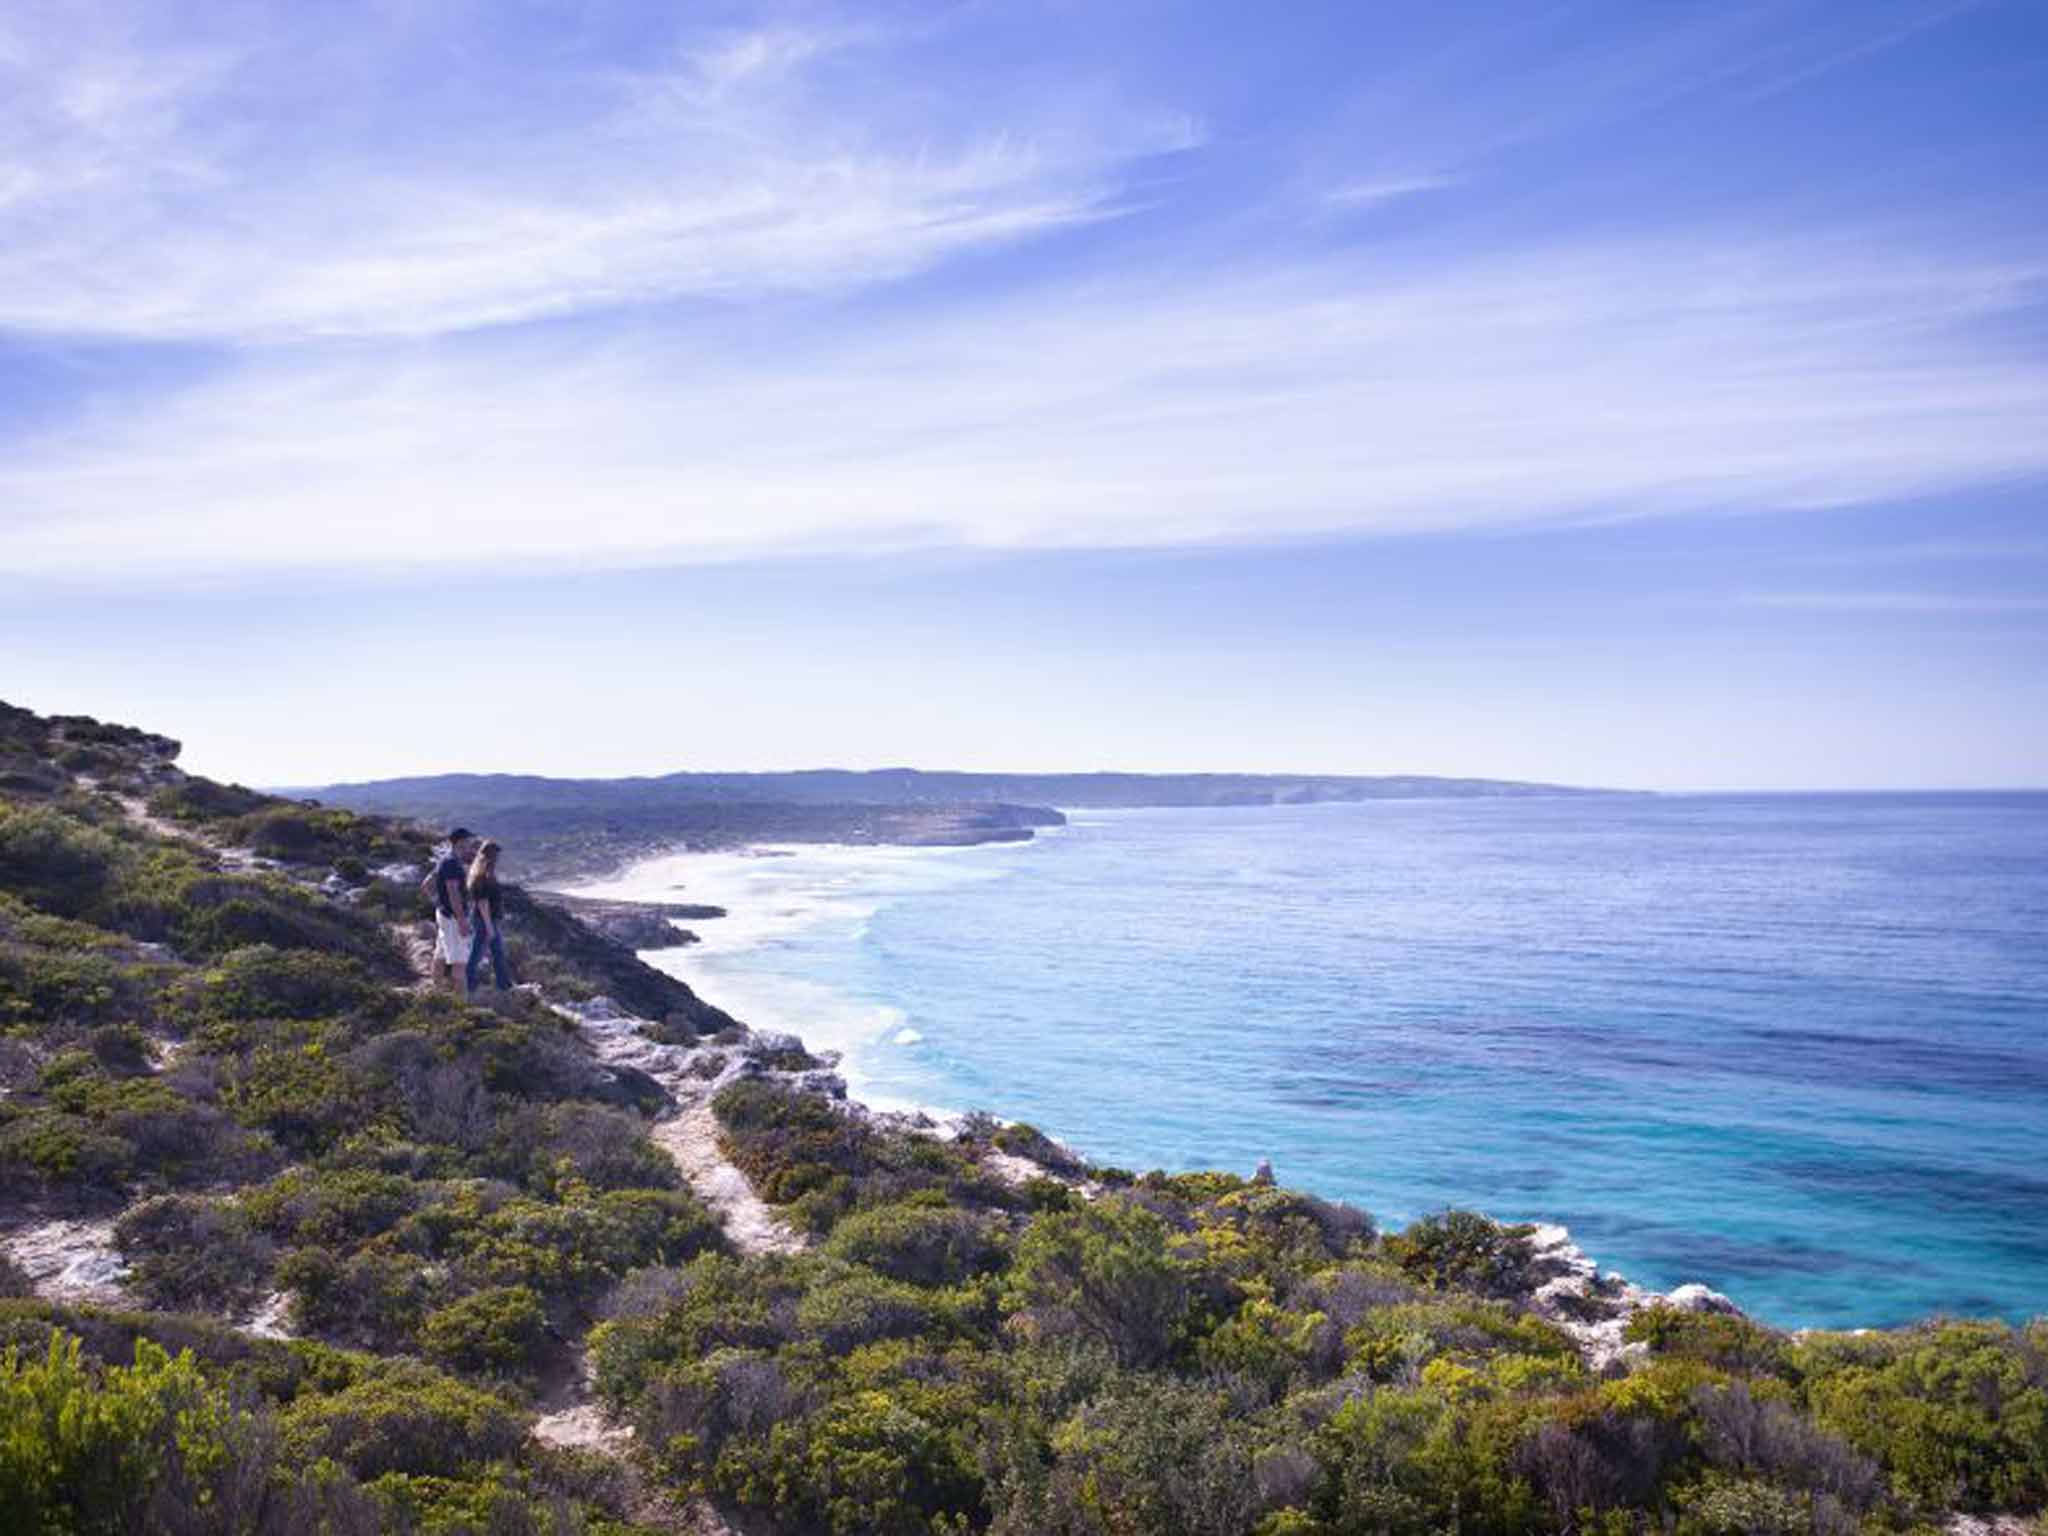 Clifftop walk on Kangaroo island, Australia